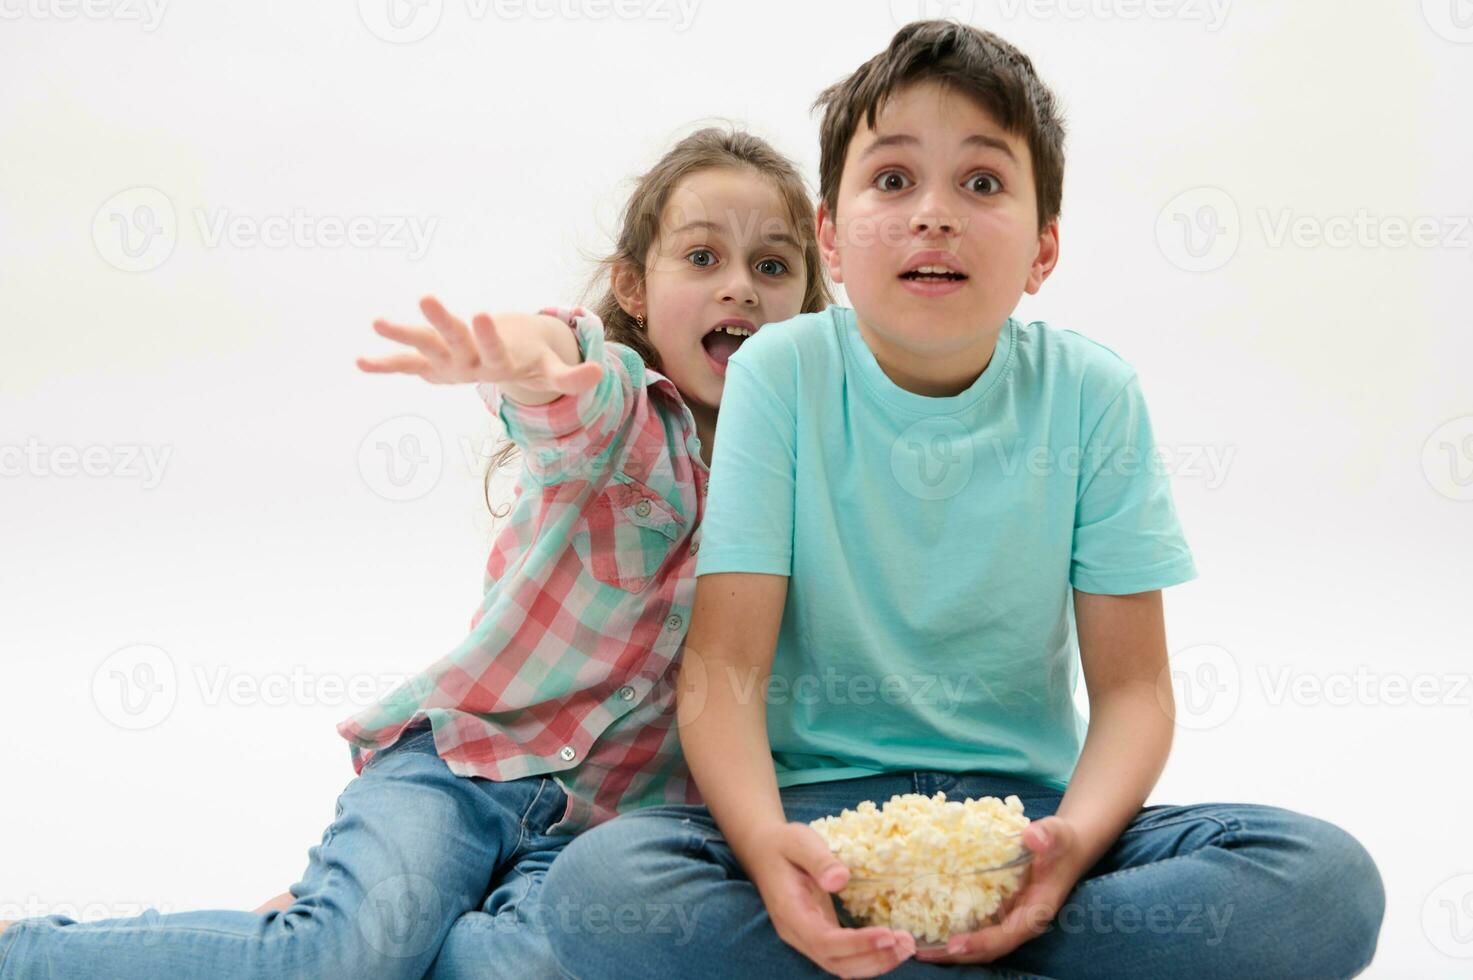 bezaubernd Kinder mit Schüssel von Popcorn, Aufpassen unheimlich oder Fantasie Film, ausdrücken Schreck und Angst auf Weiß Hintergrund foto